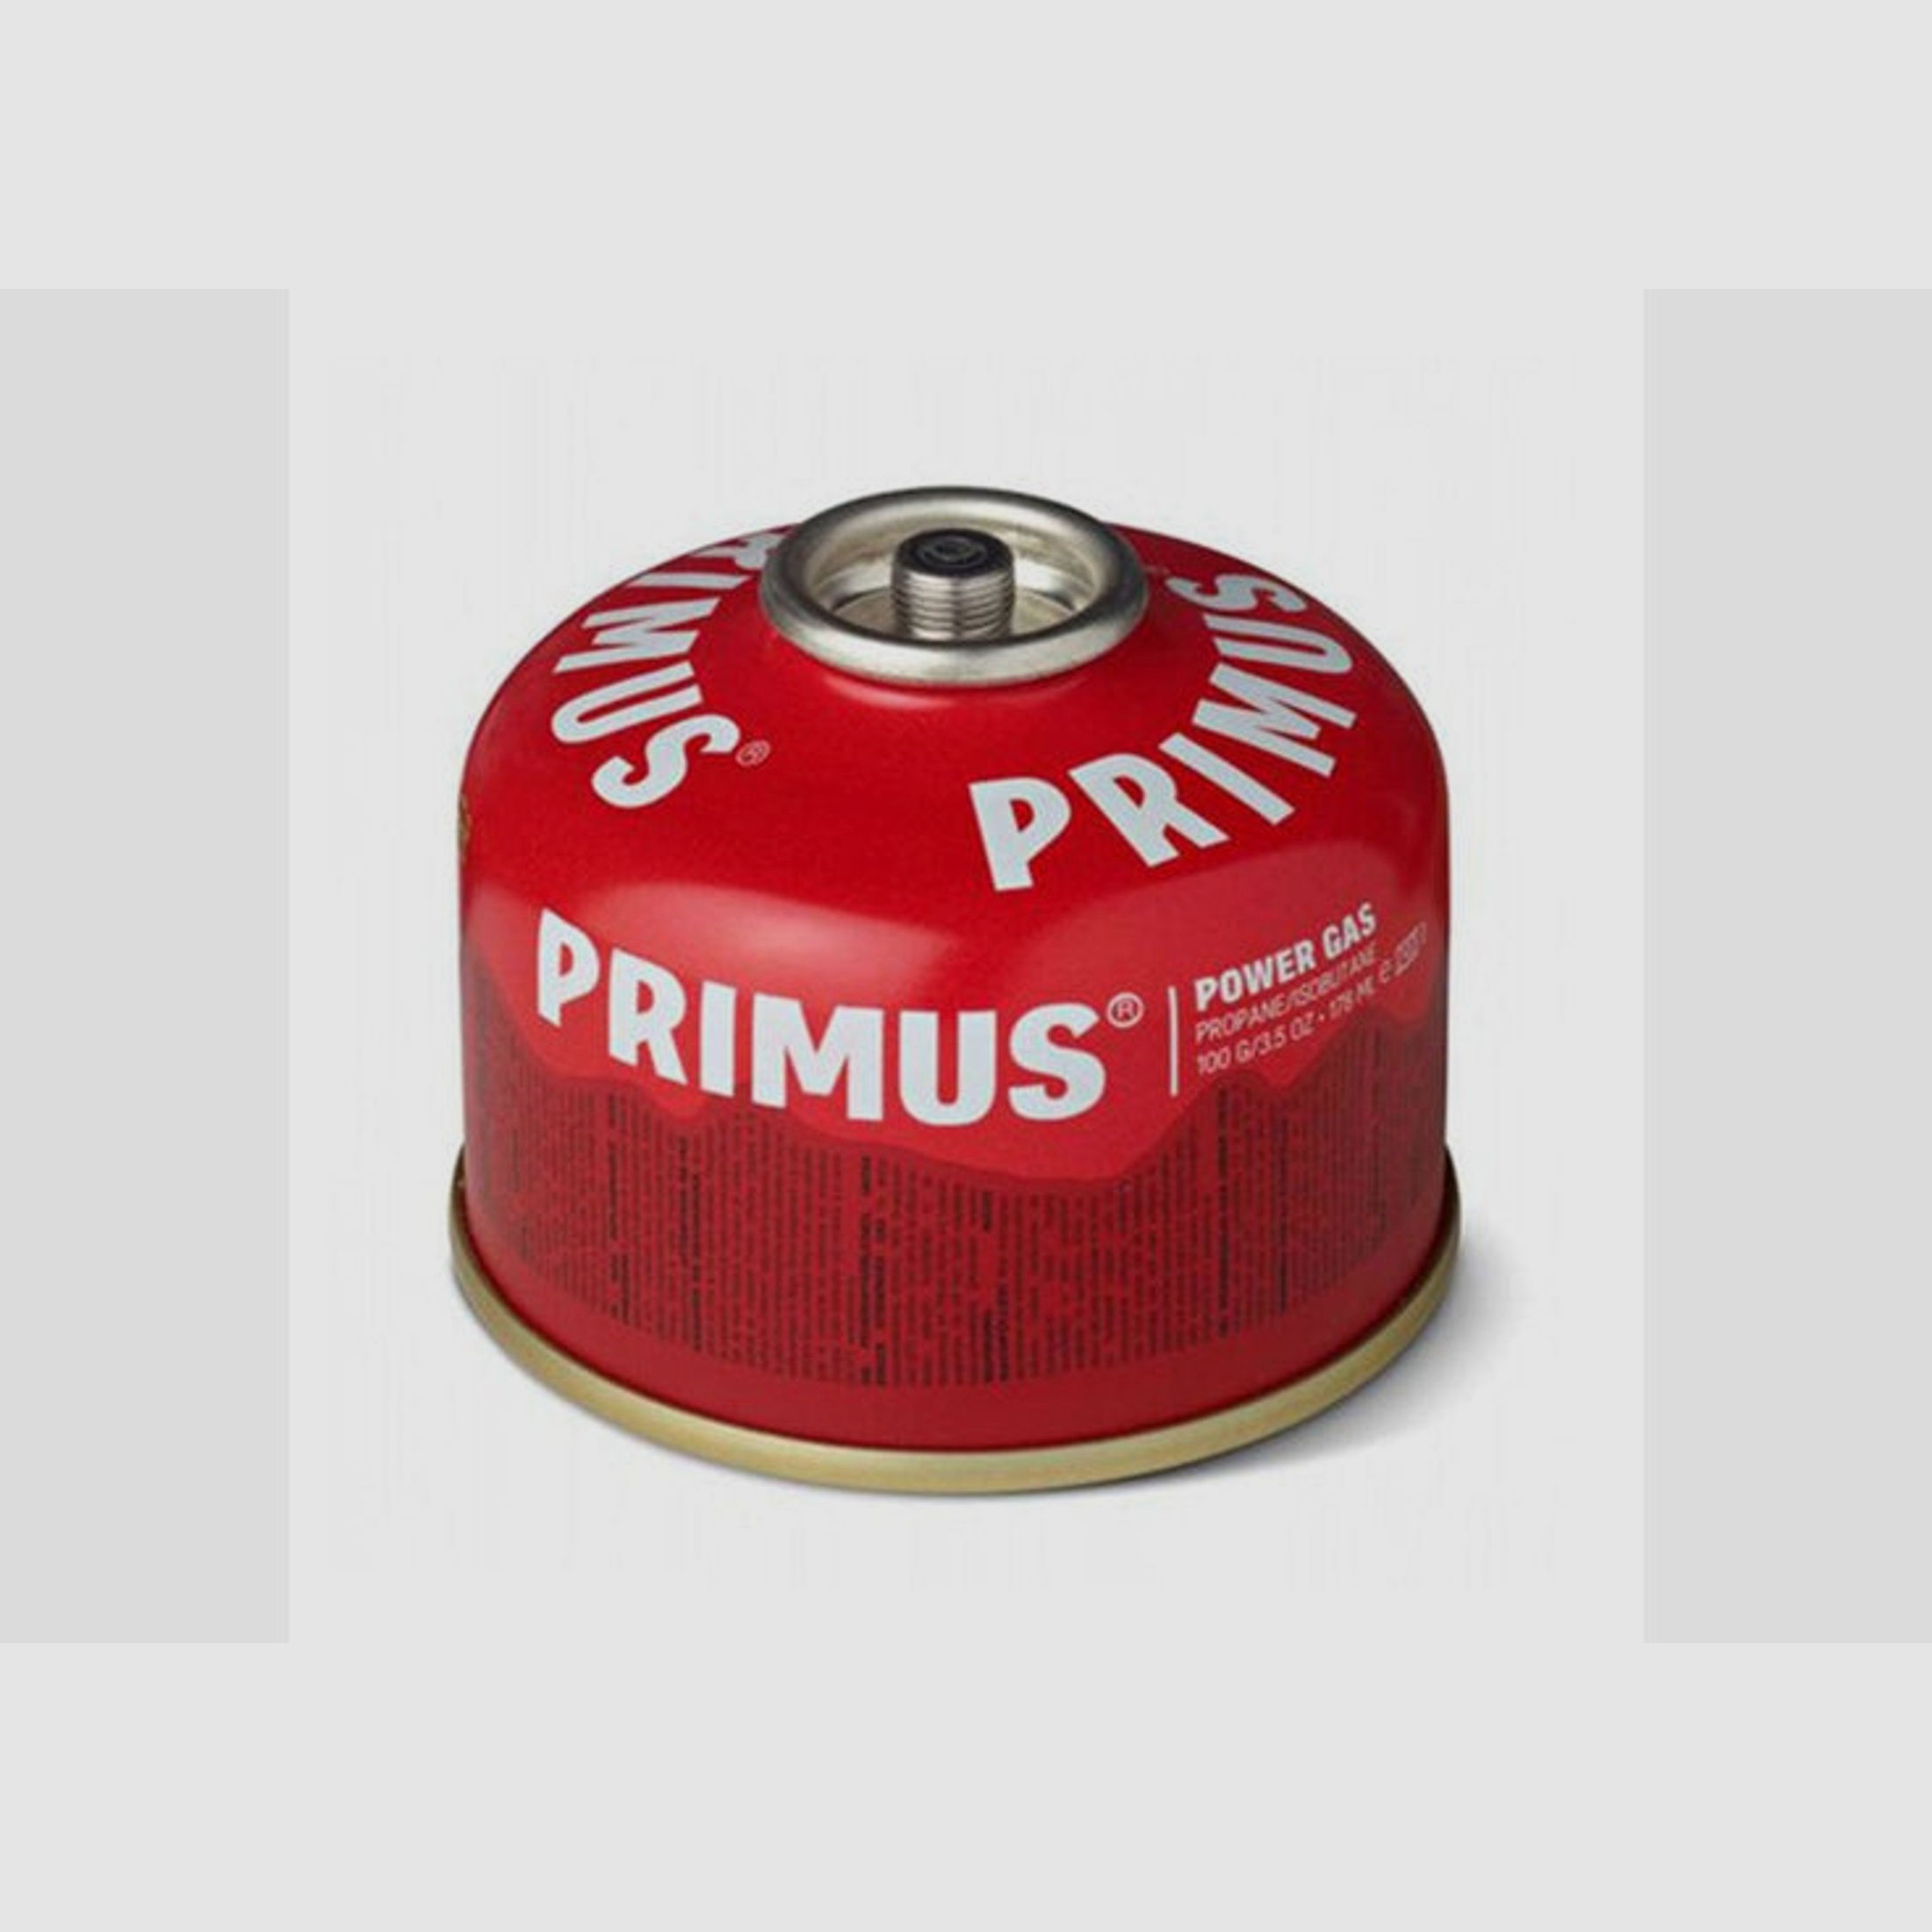 Primus Power Gas Gaskartusche 100g